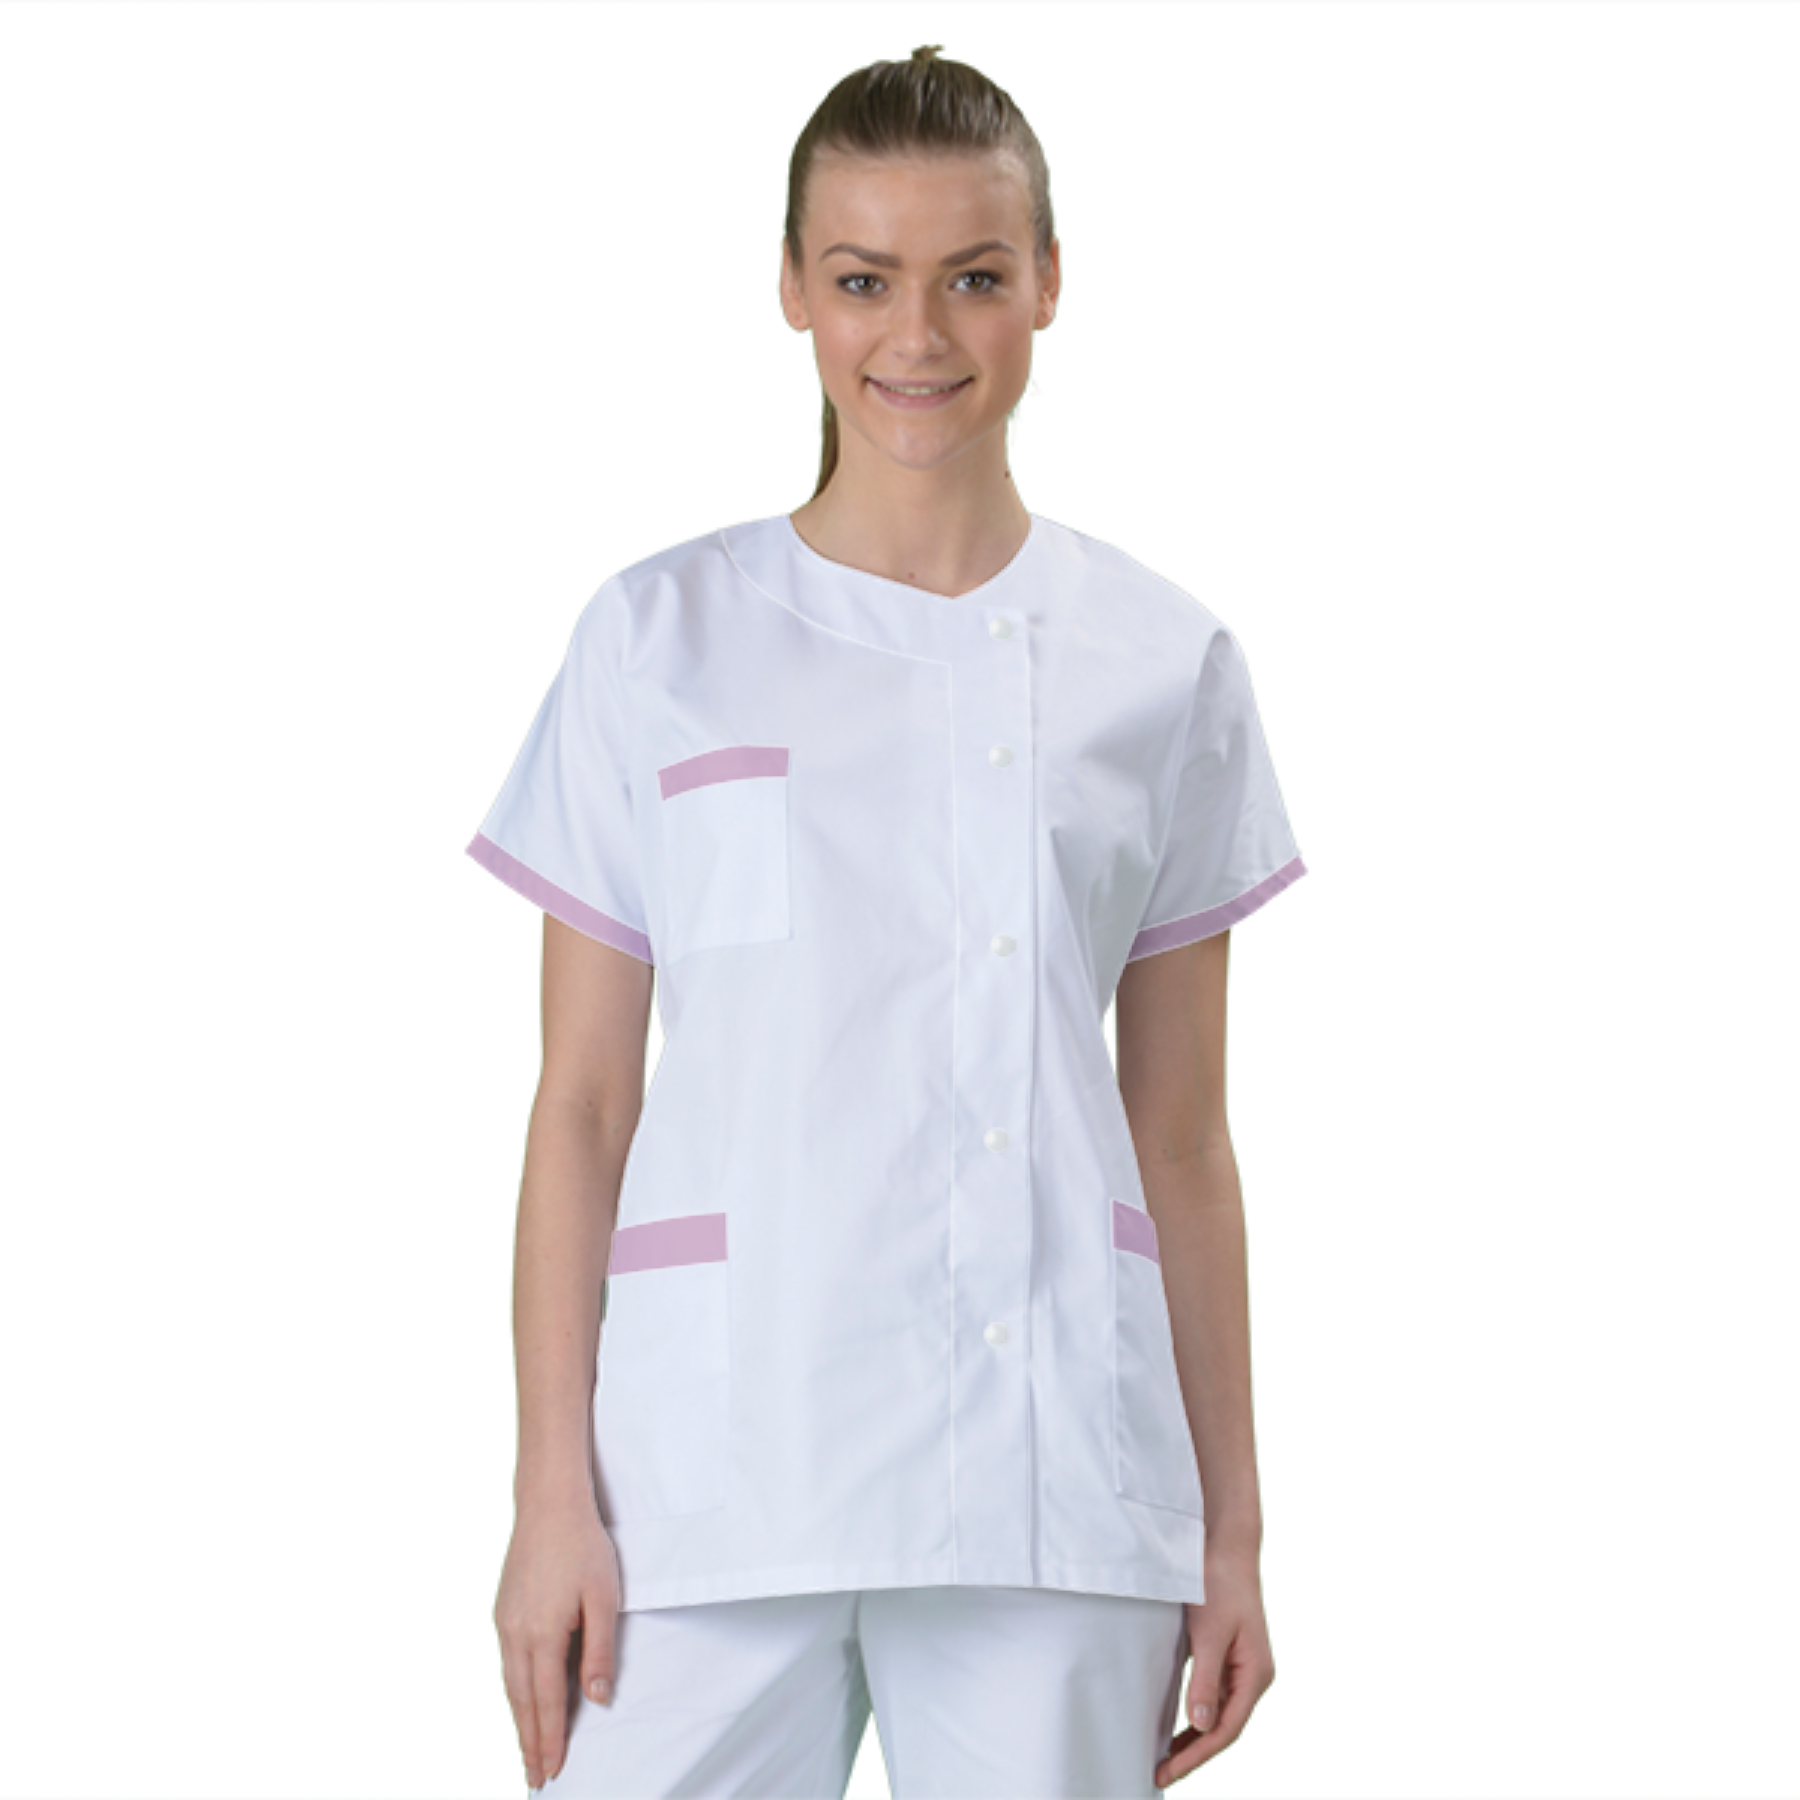 blouse-medicale-col-carre-a-personnaliser acheté - par Andrea - le 25-01-2020